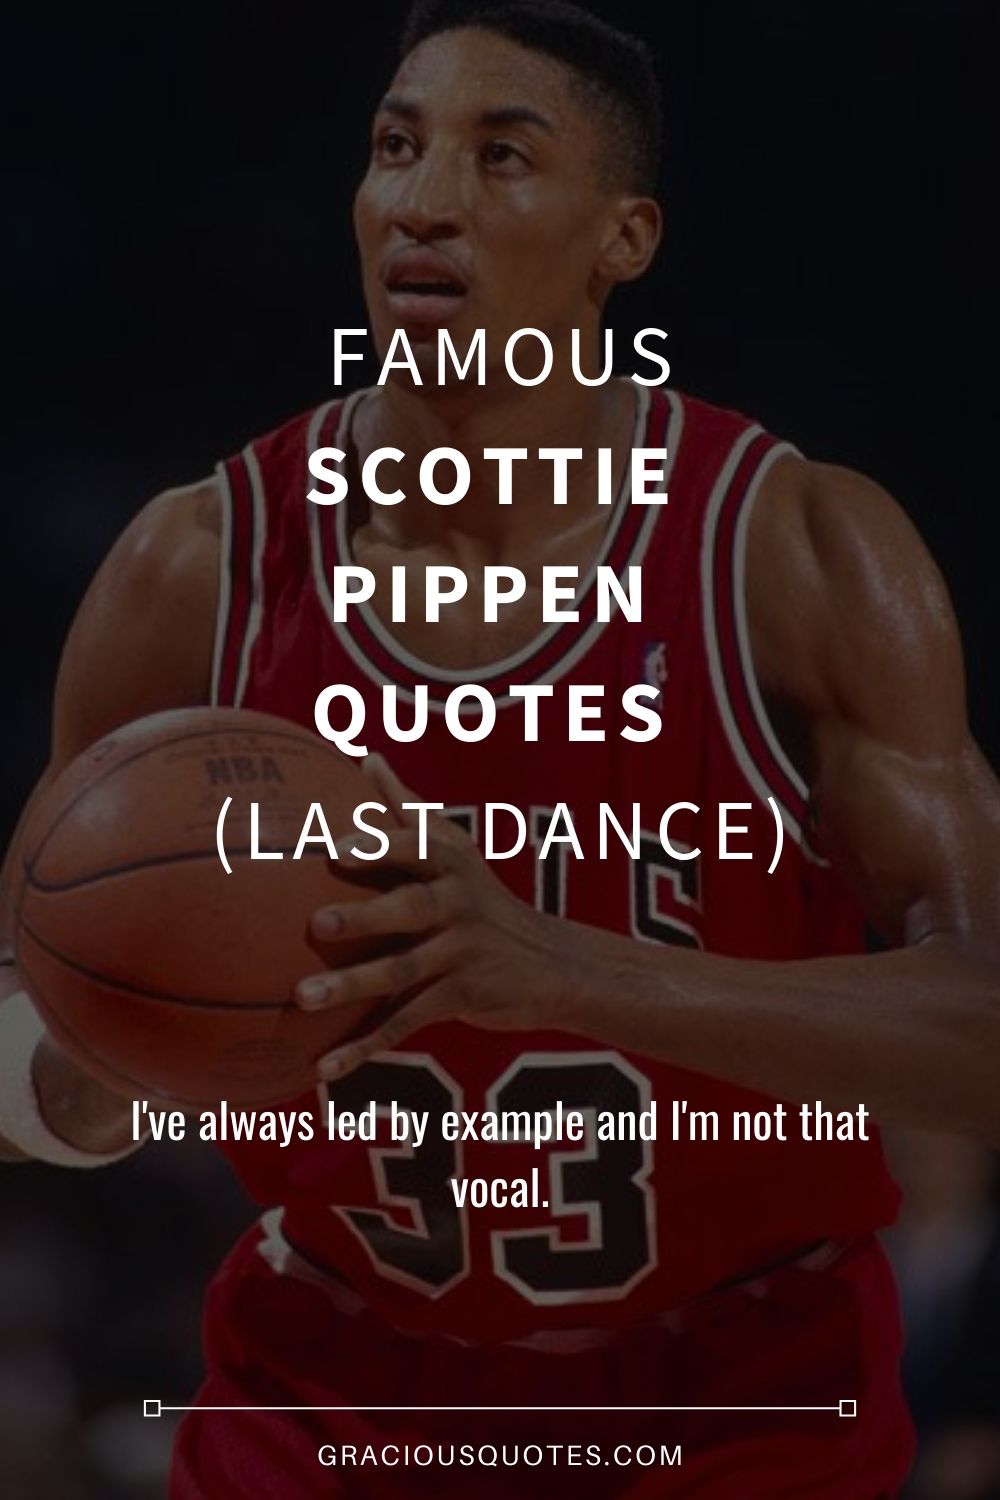 Famous Scottie Pippen Quotes (LAST DANCE) - Gracious Quotes